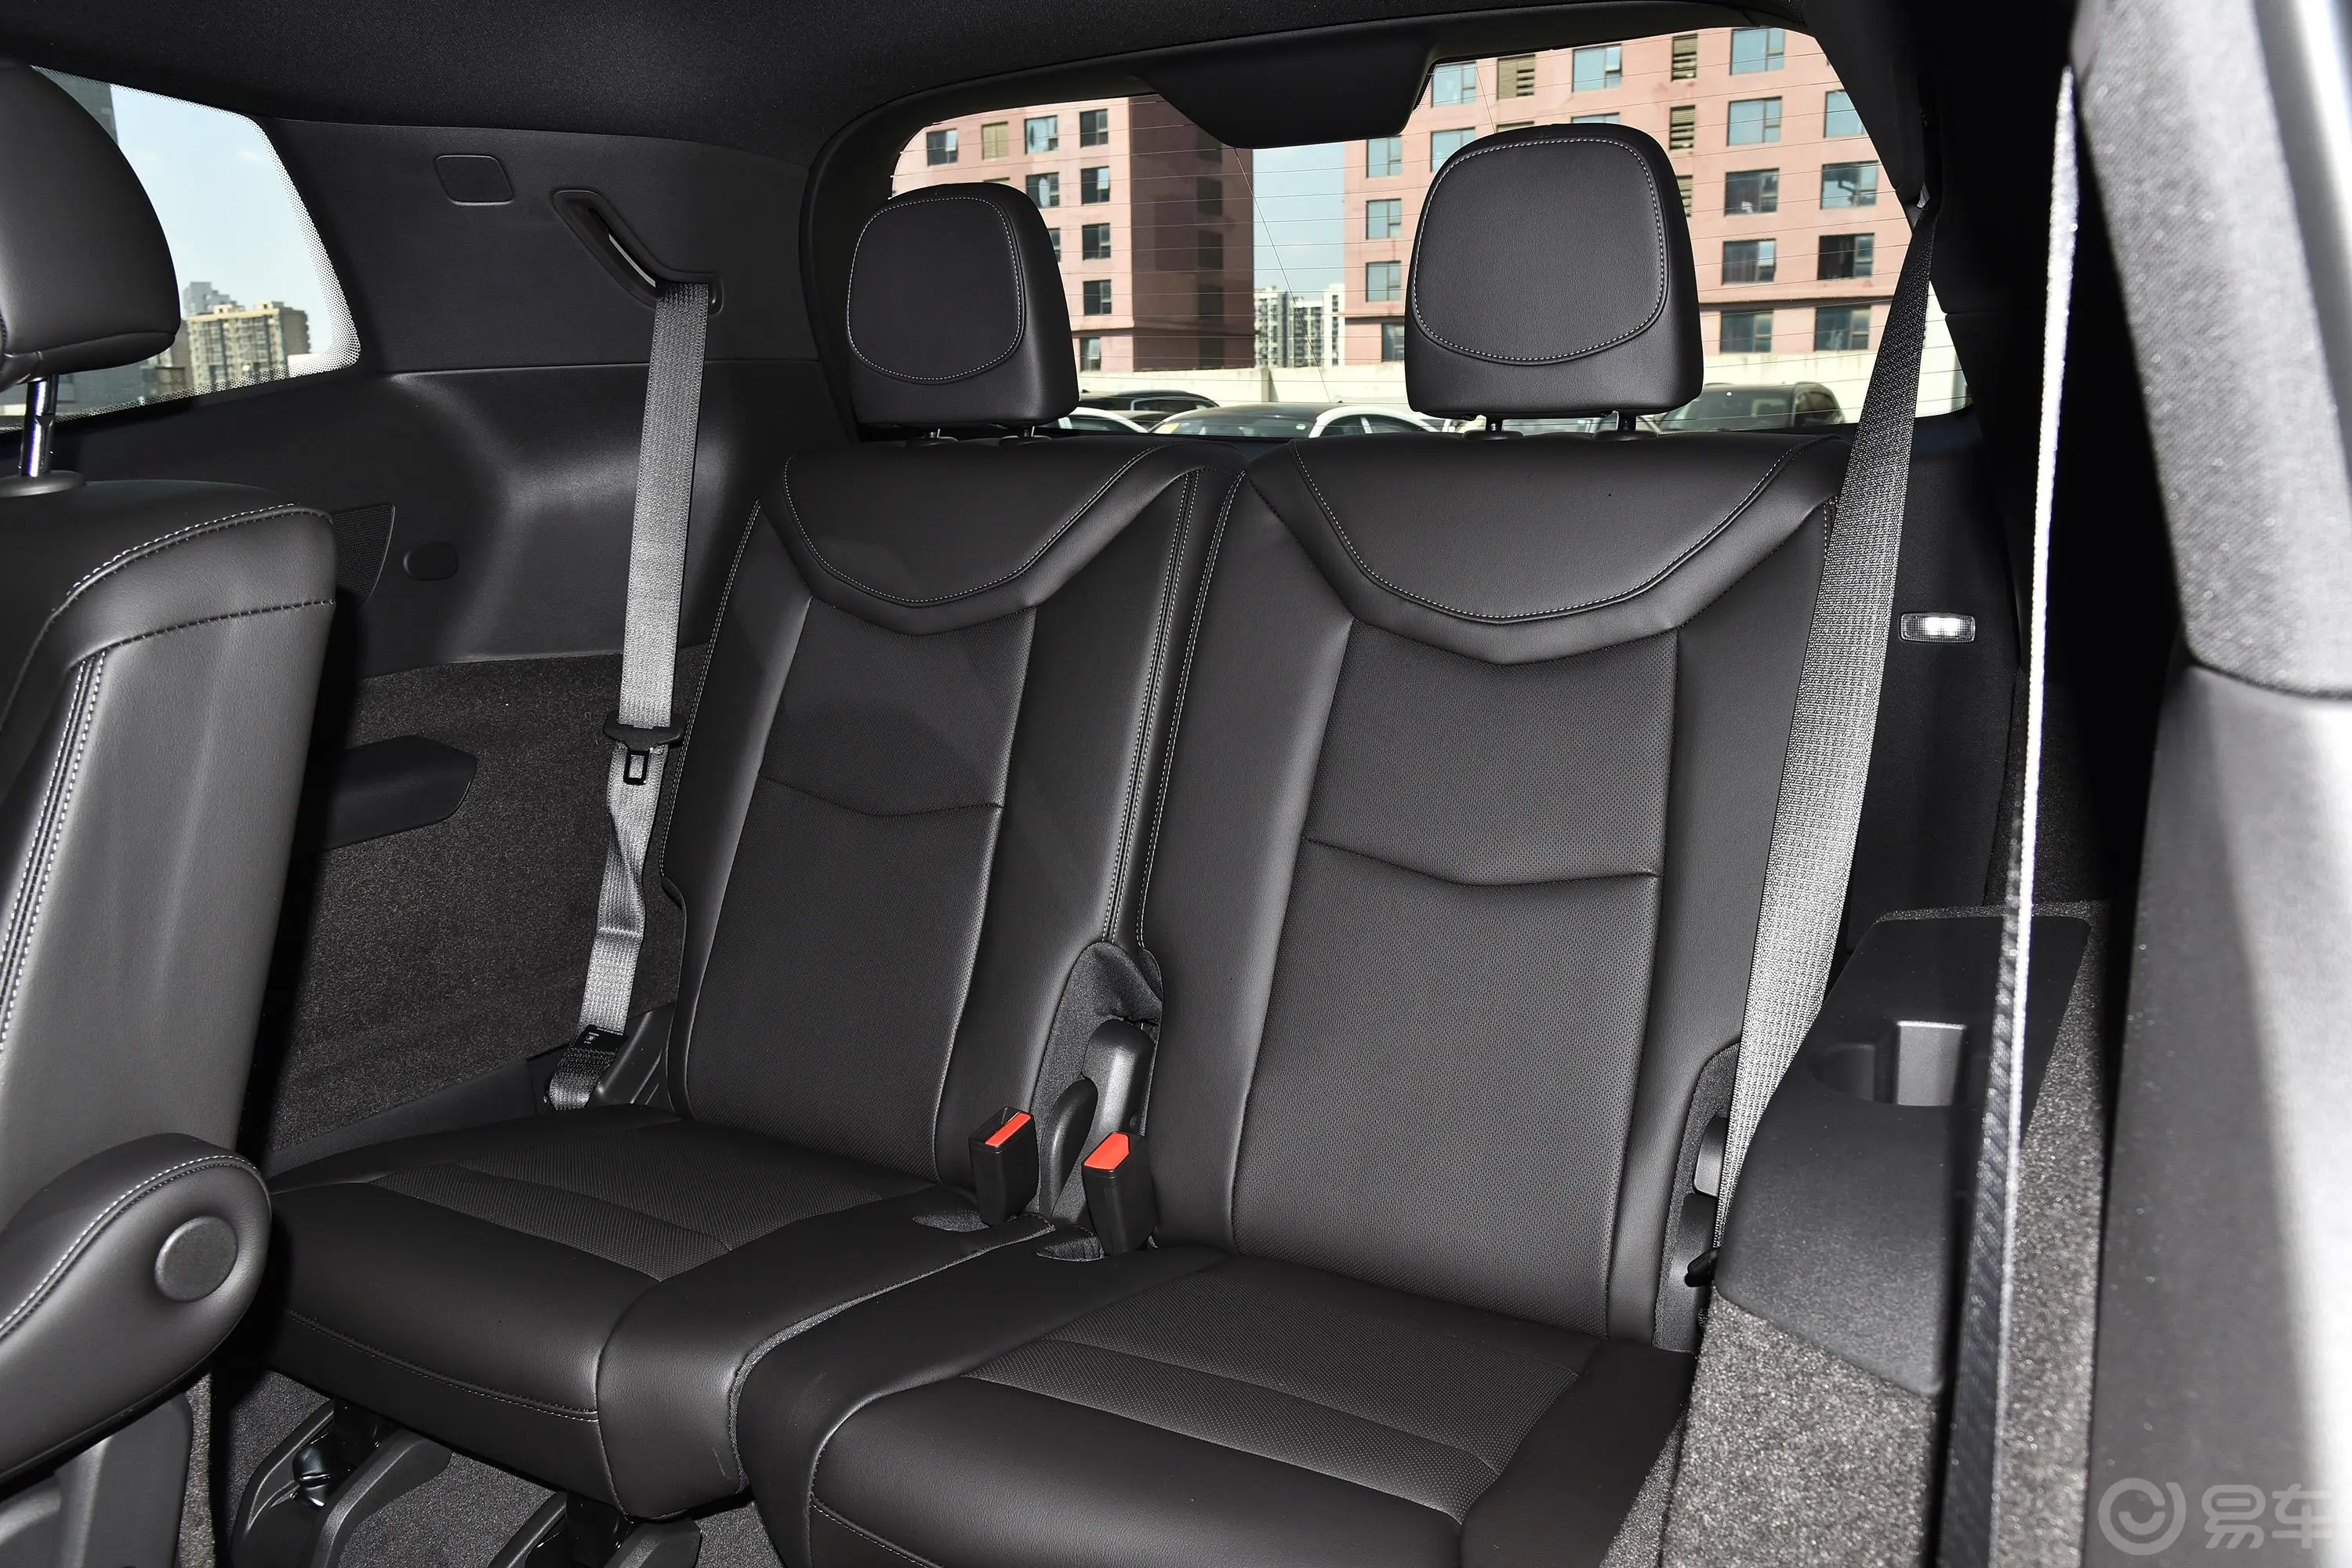 凯迪拉克XT6轻混 120周年纪念版 2.0T 四驱豪华型 6座第三排座椅